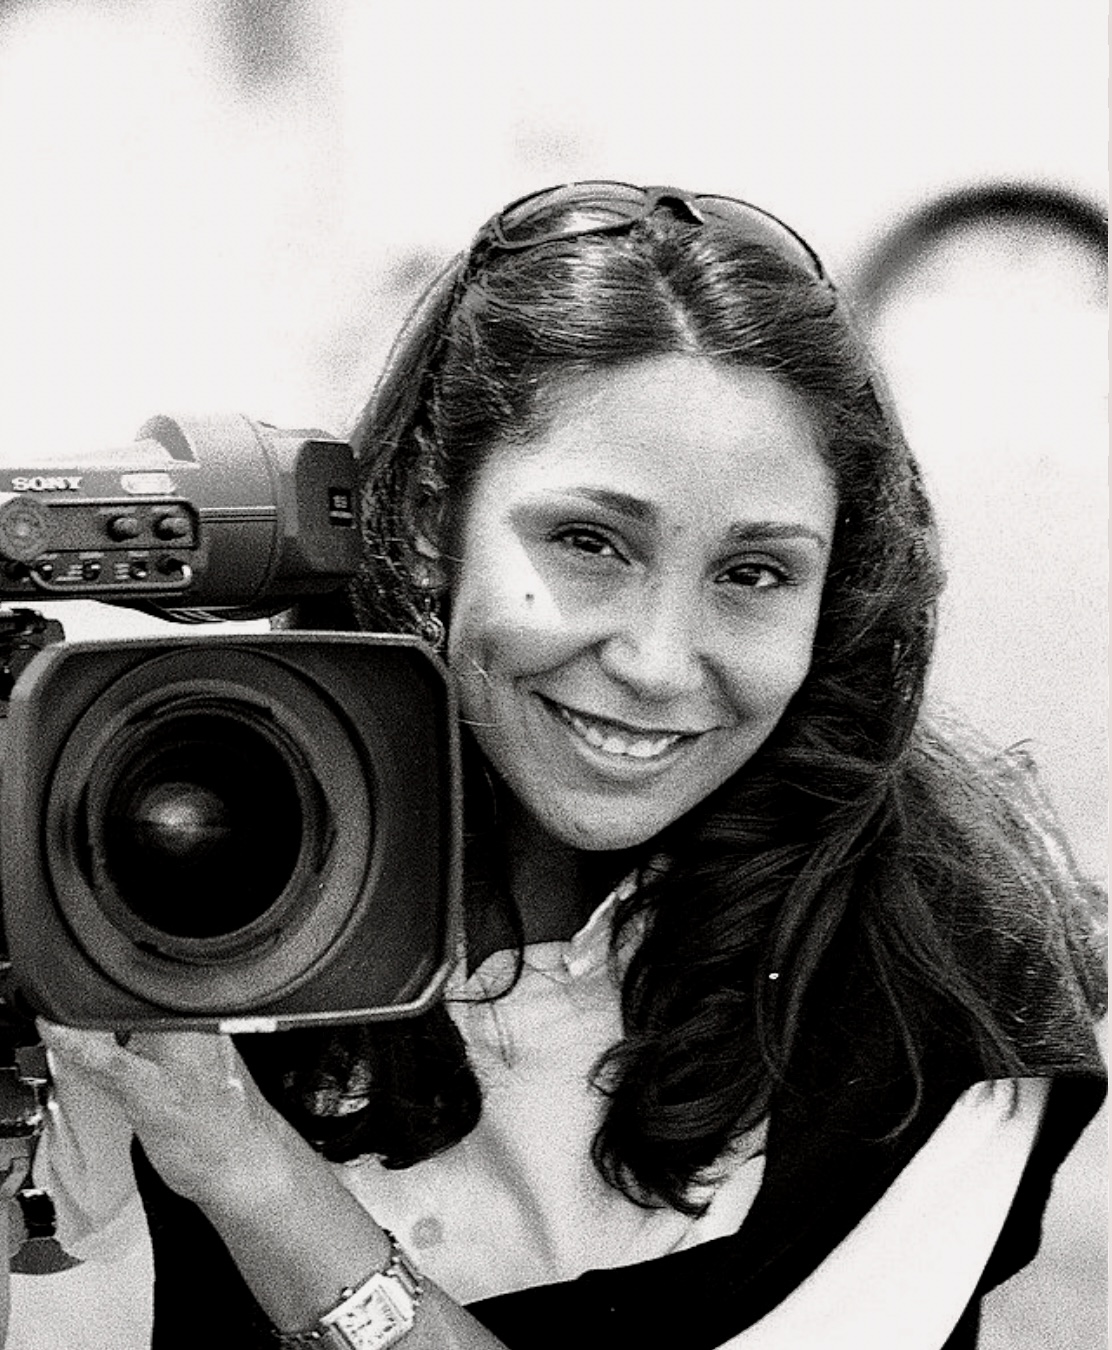 Festival du film capturé dans une photo en noir et blanc d'une femme tenant un appareil photo.